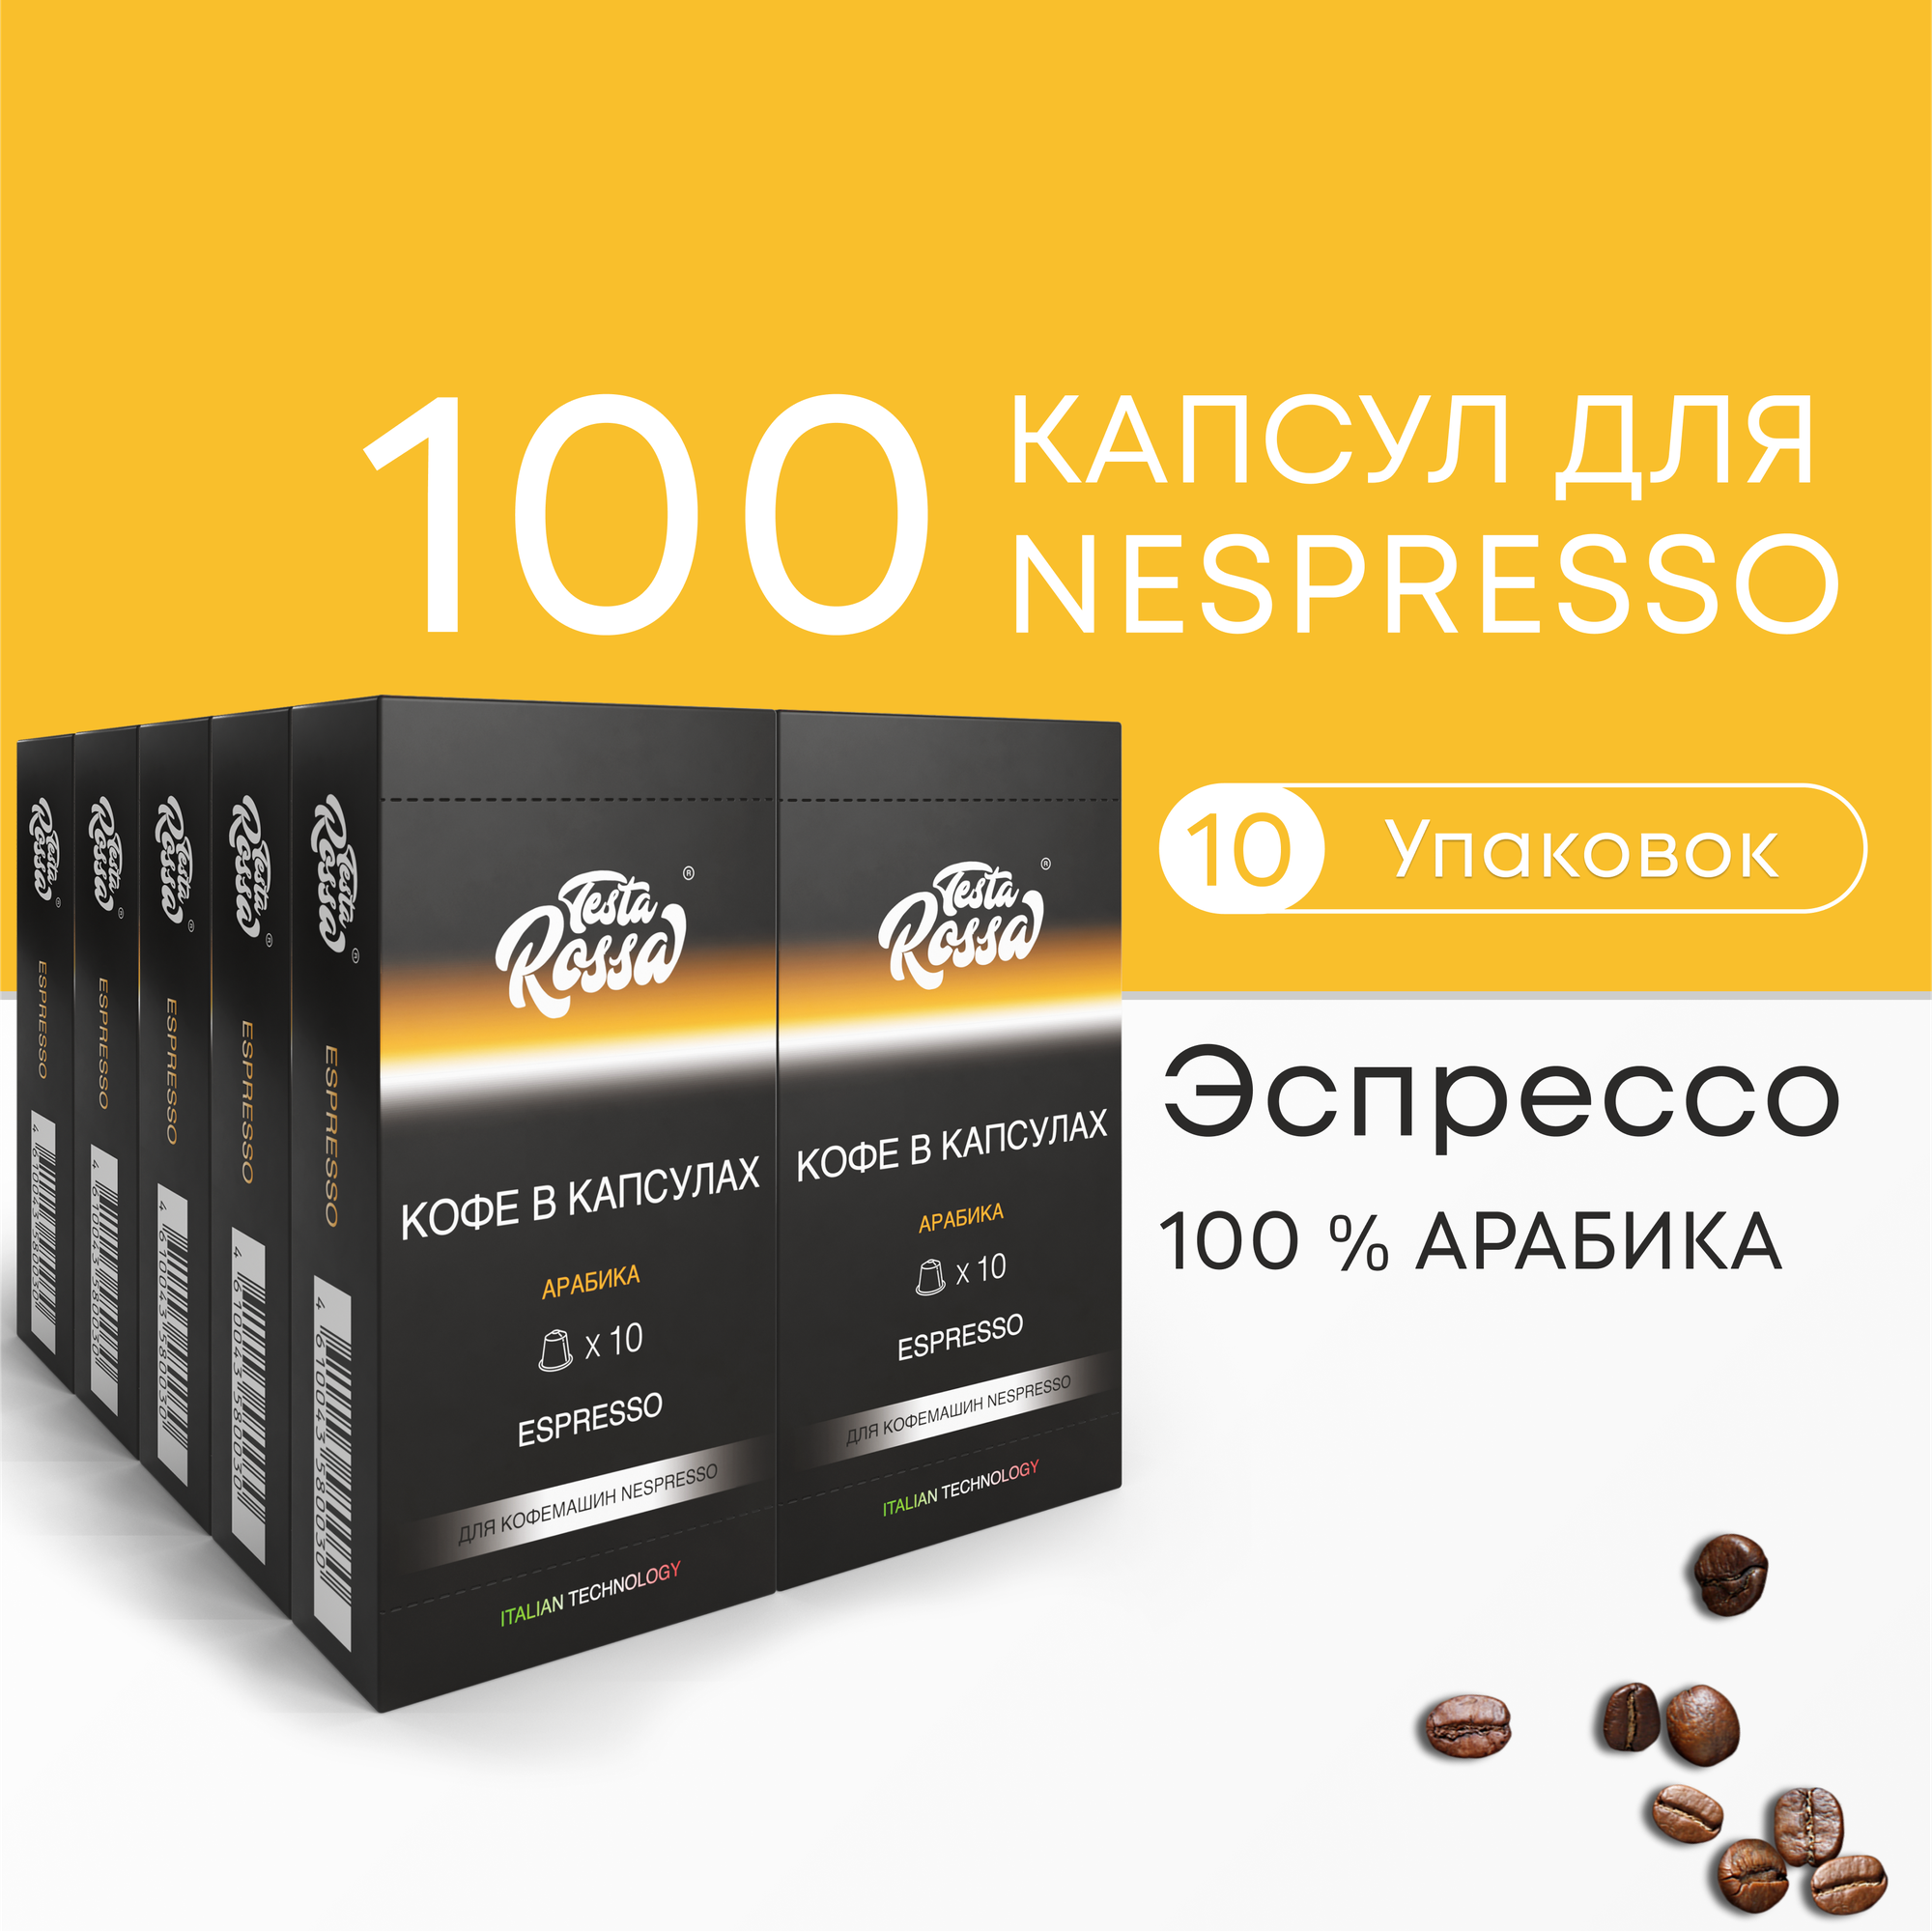 Эспрессо Арабика 100% - Капсулы Testa Rossa - 100 шт, набор кофе в капсулах неспрессо, для кофемашины NESPRESSO - фотография № 1